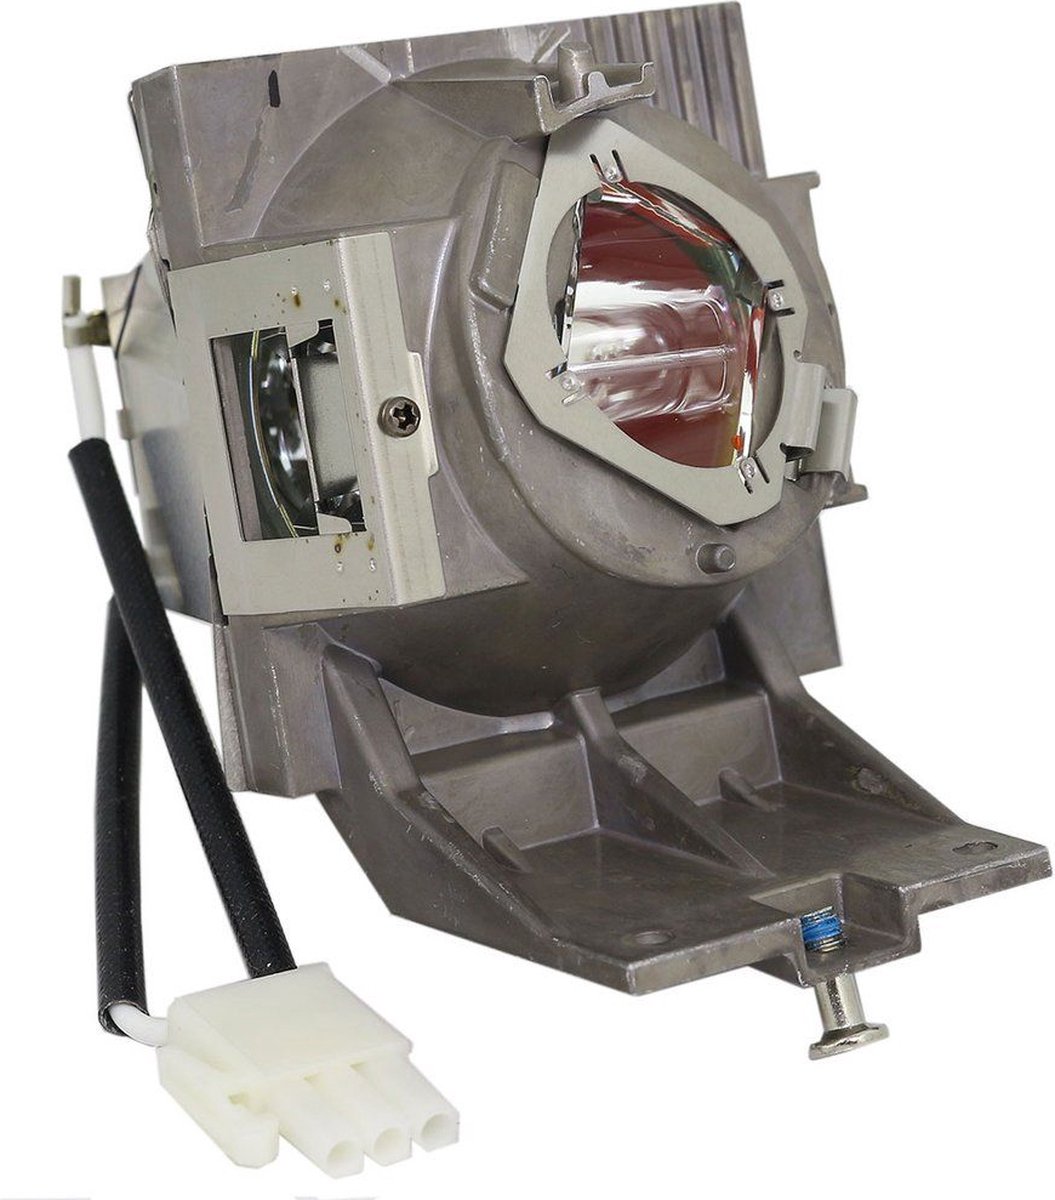 Beamerlamp geschikt voor de VIEWSONIC PX729-4KS beamer, lamp code RLC-127. Bevat originele UHP lamp, prestaties gelijk aan origineel.